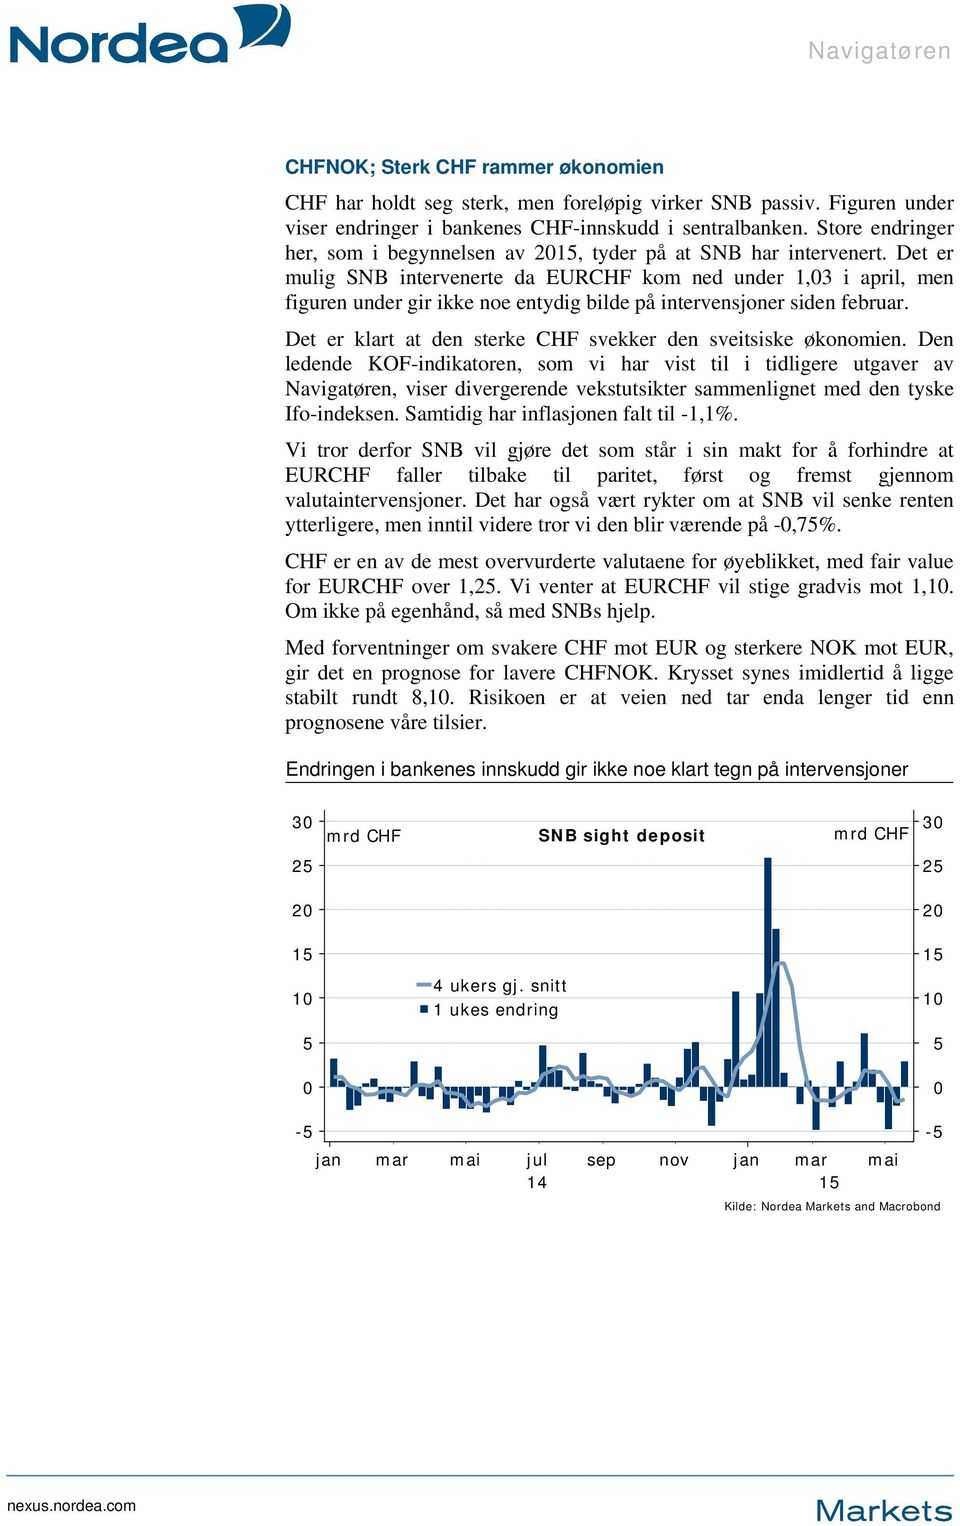 Det er mulig SNB intervenerte da EURCHF kom ned under 1,03 i april, men figuren under gir ikke noe entydig bilde på intervensjoner siden februar.